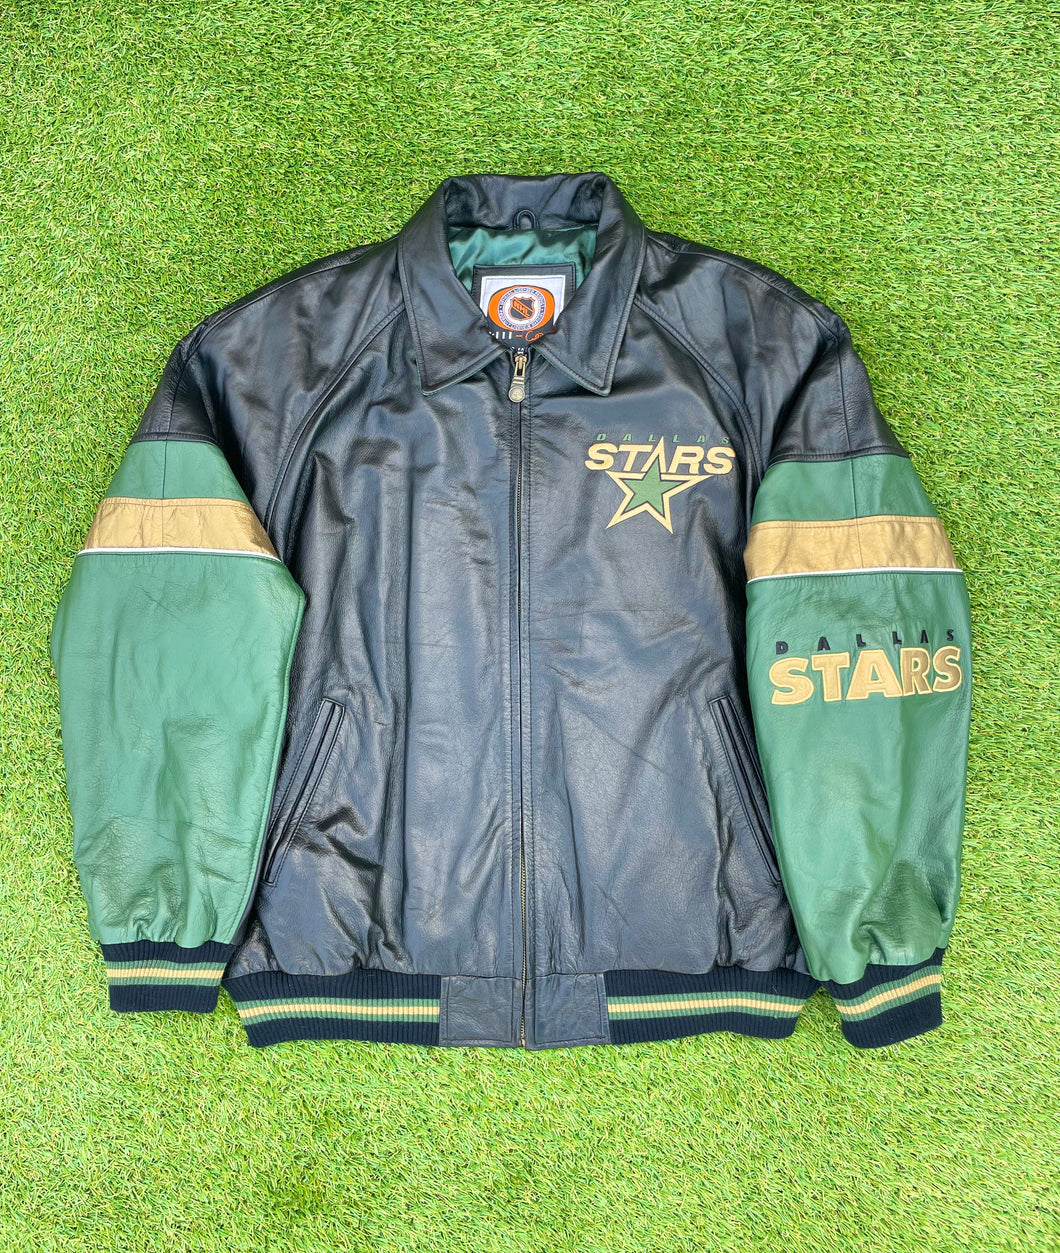 Vintage Dallas Stars Leather Jacket